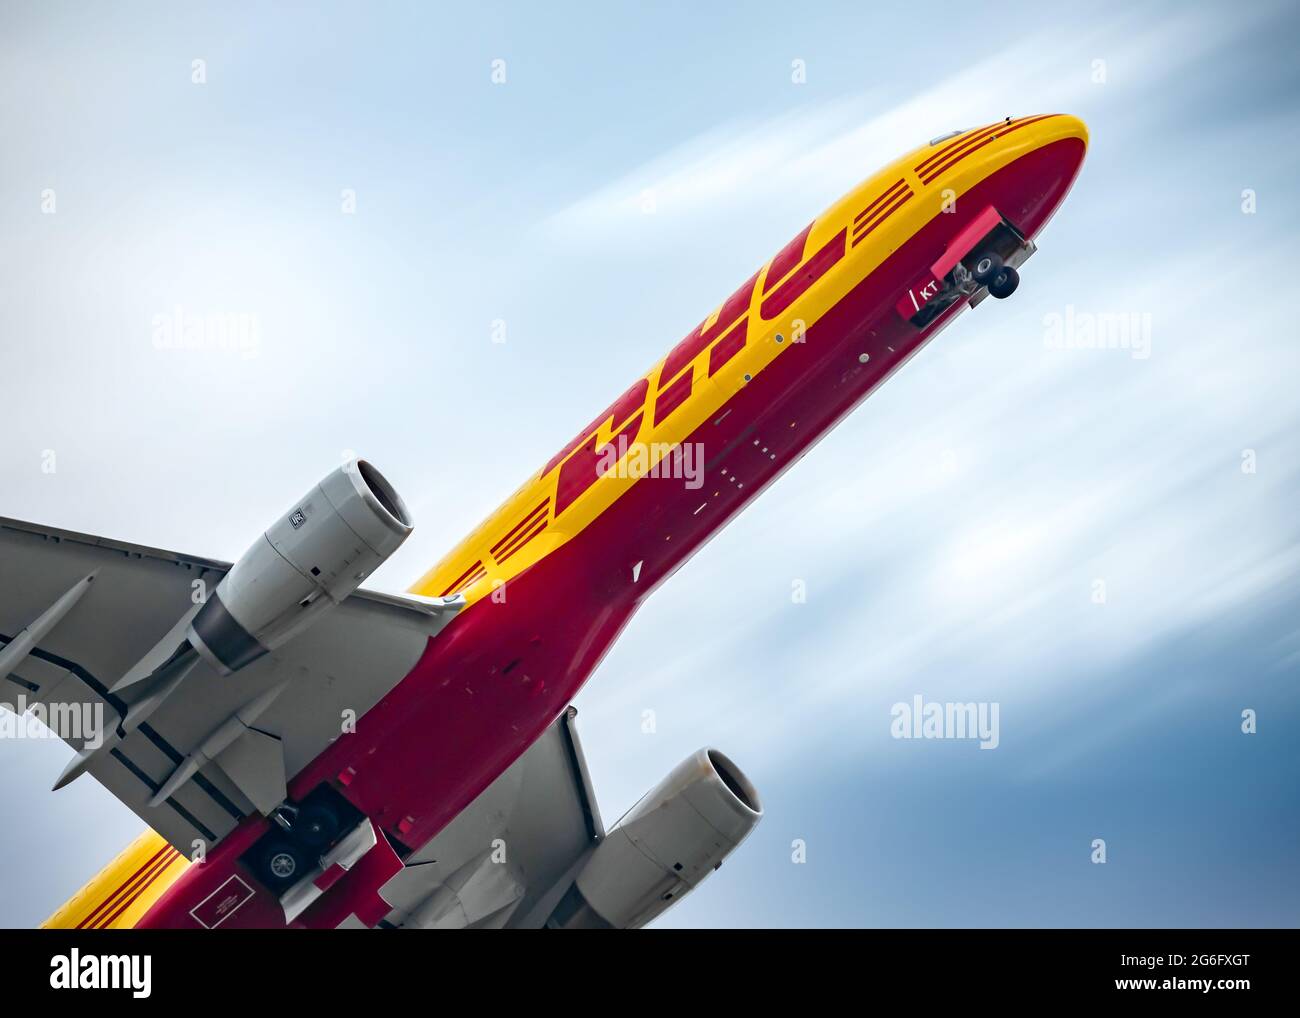 Les avions cargo jaune et rouge DHL prennent le décollage vers un ciel bleu  avec des nuages qui s'estompent. Les roues descendent après avoir juste  soulevé la piste Photo Stock - Alamy